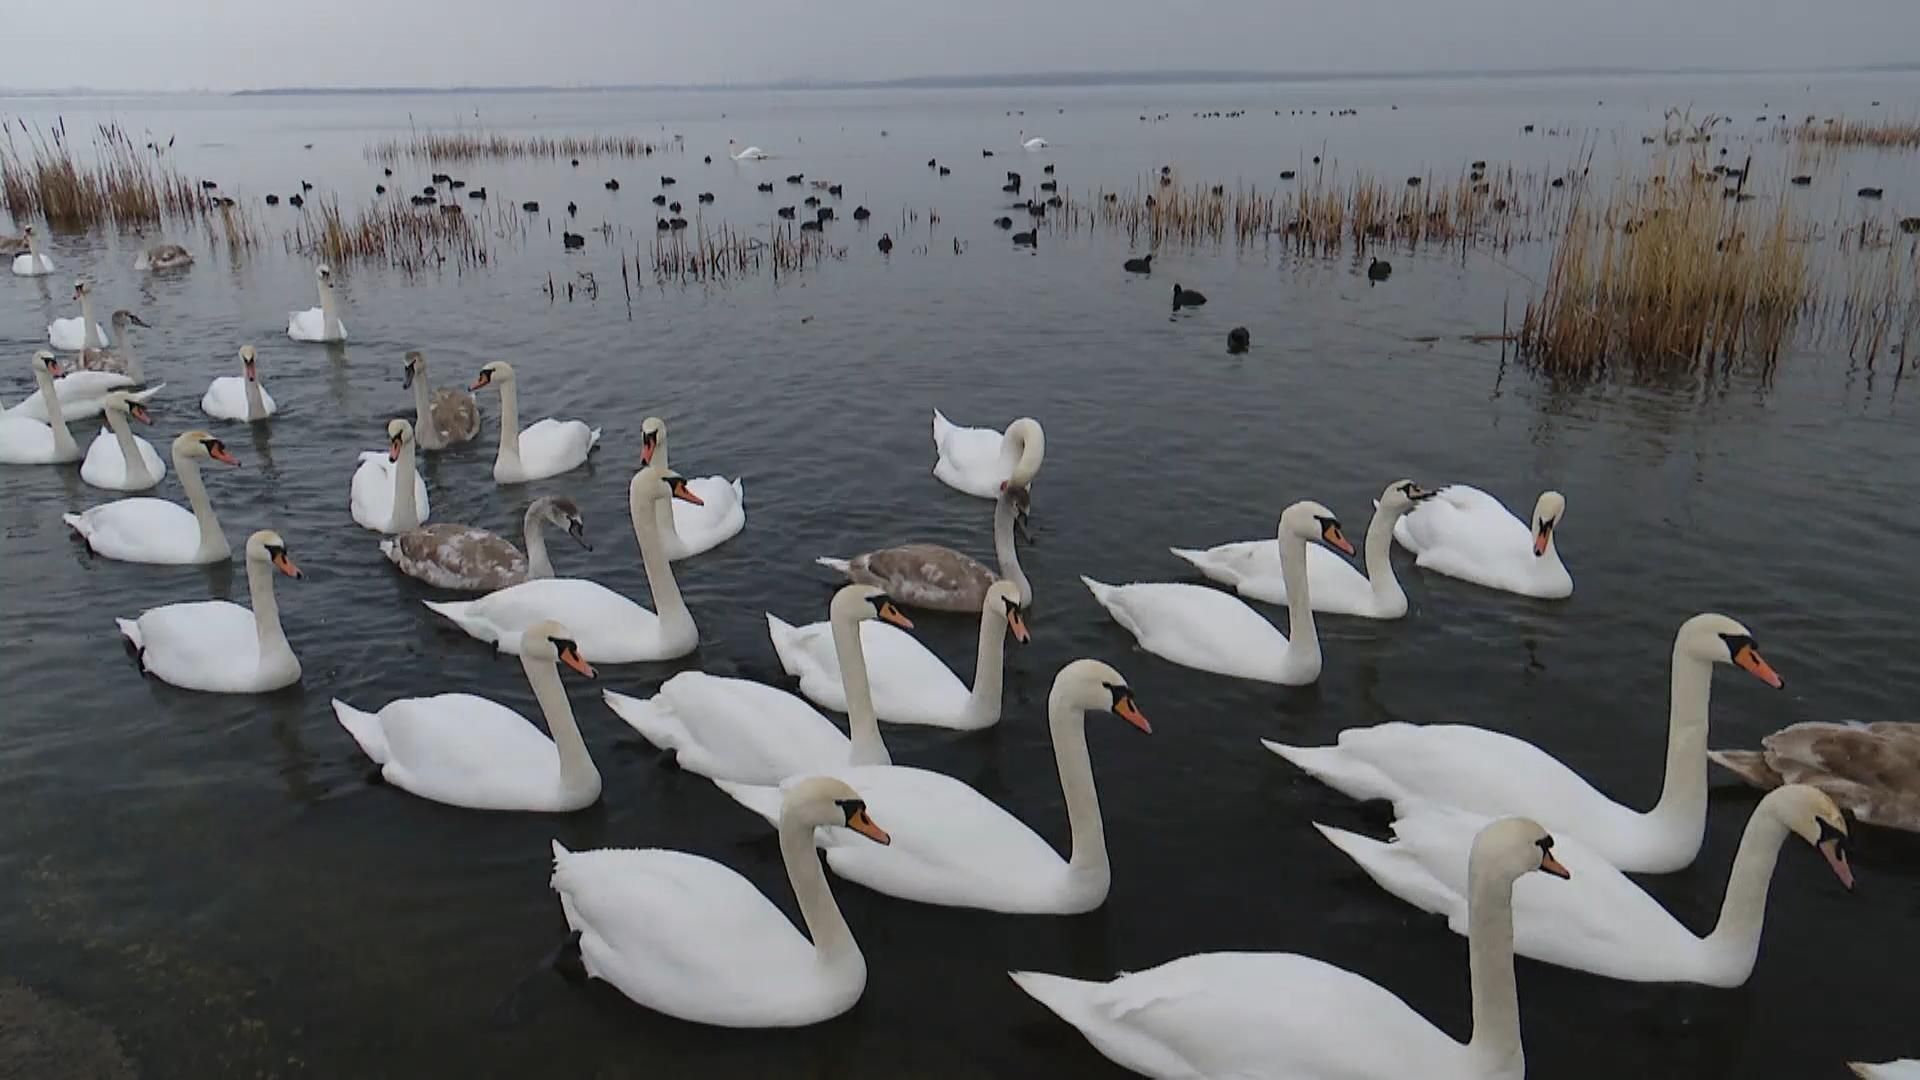 Знайшли теплу водойму біля Острога: як правильно годувати лебедів - Україна новини - 24 Канал